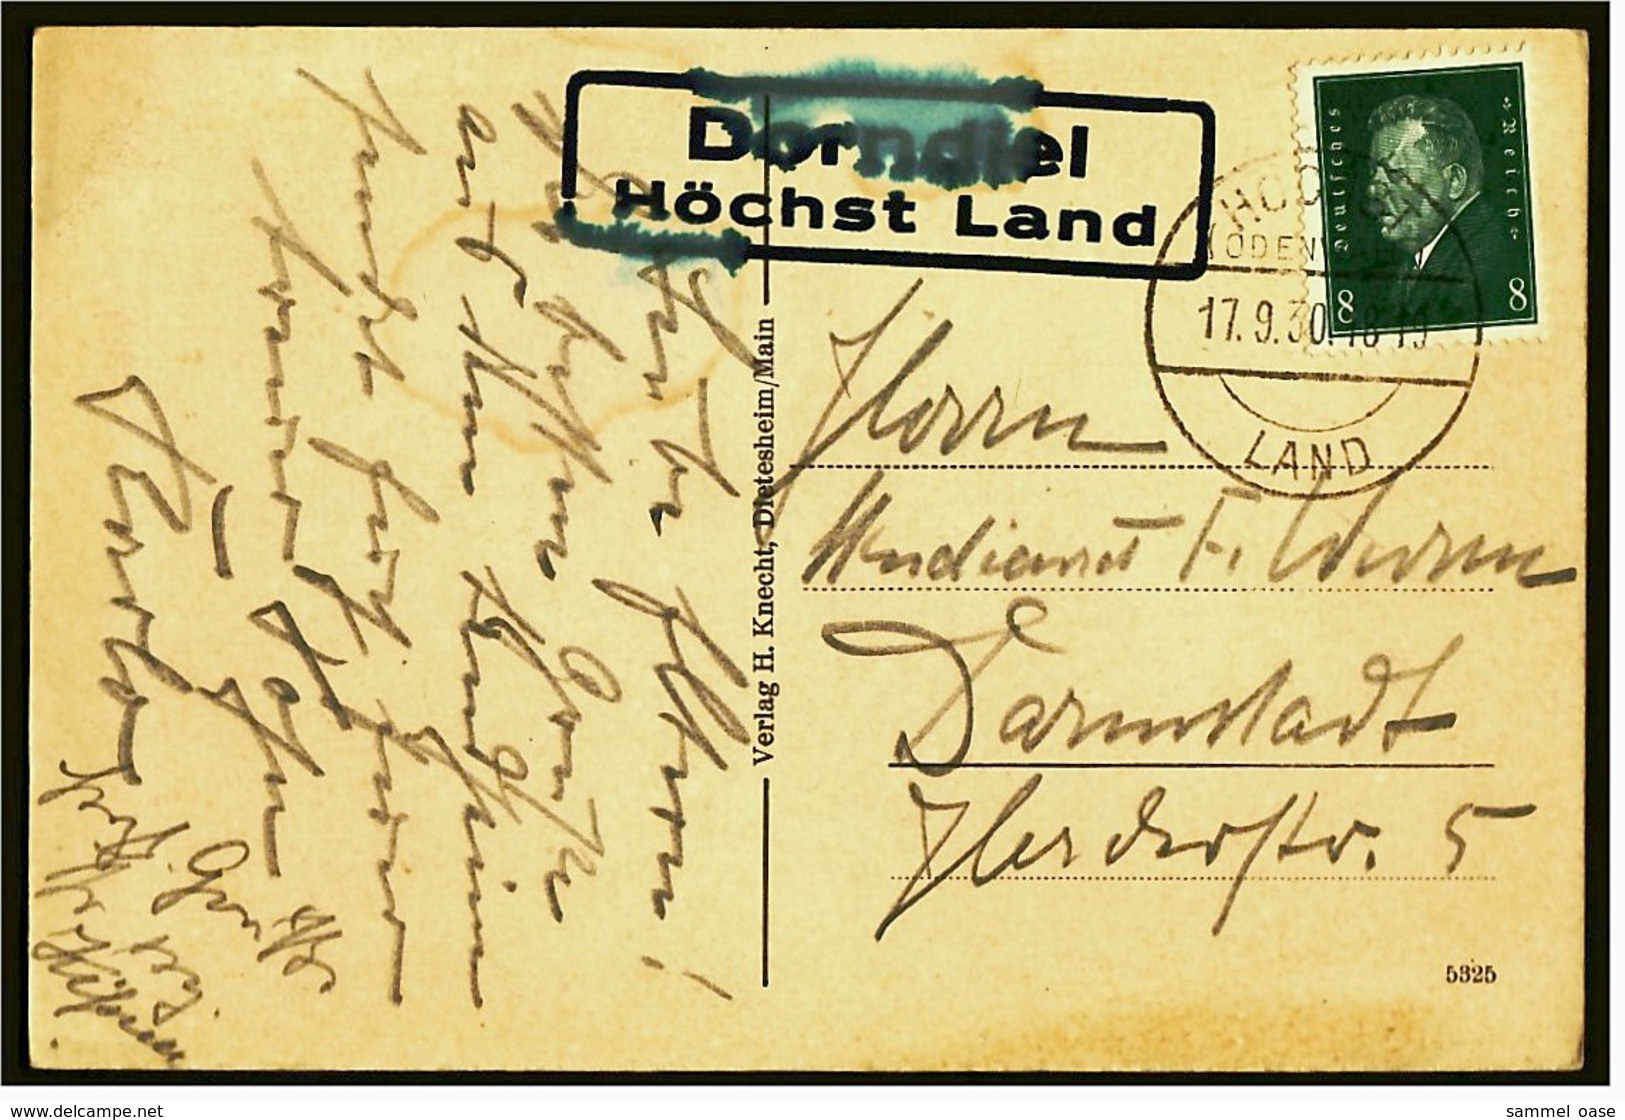 Groß-Umstadt / Stadtteil Dorndiel / Odw. -  Jugendherberge U. Landheim  -  Ansichtskarte Ca. 1930  (6086) - Hoechst